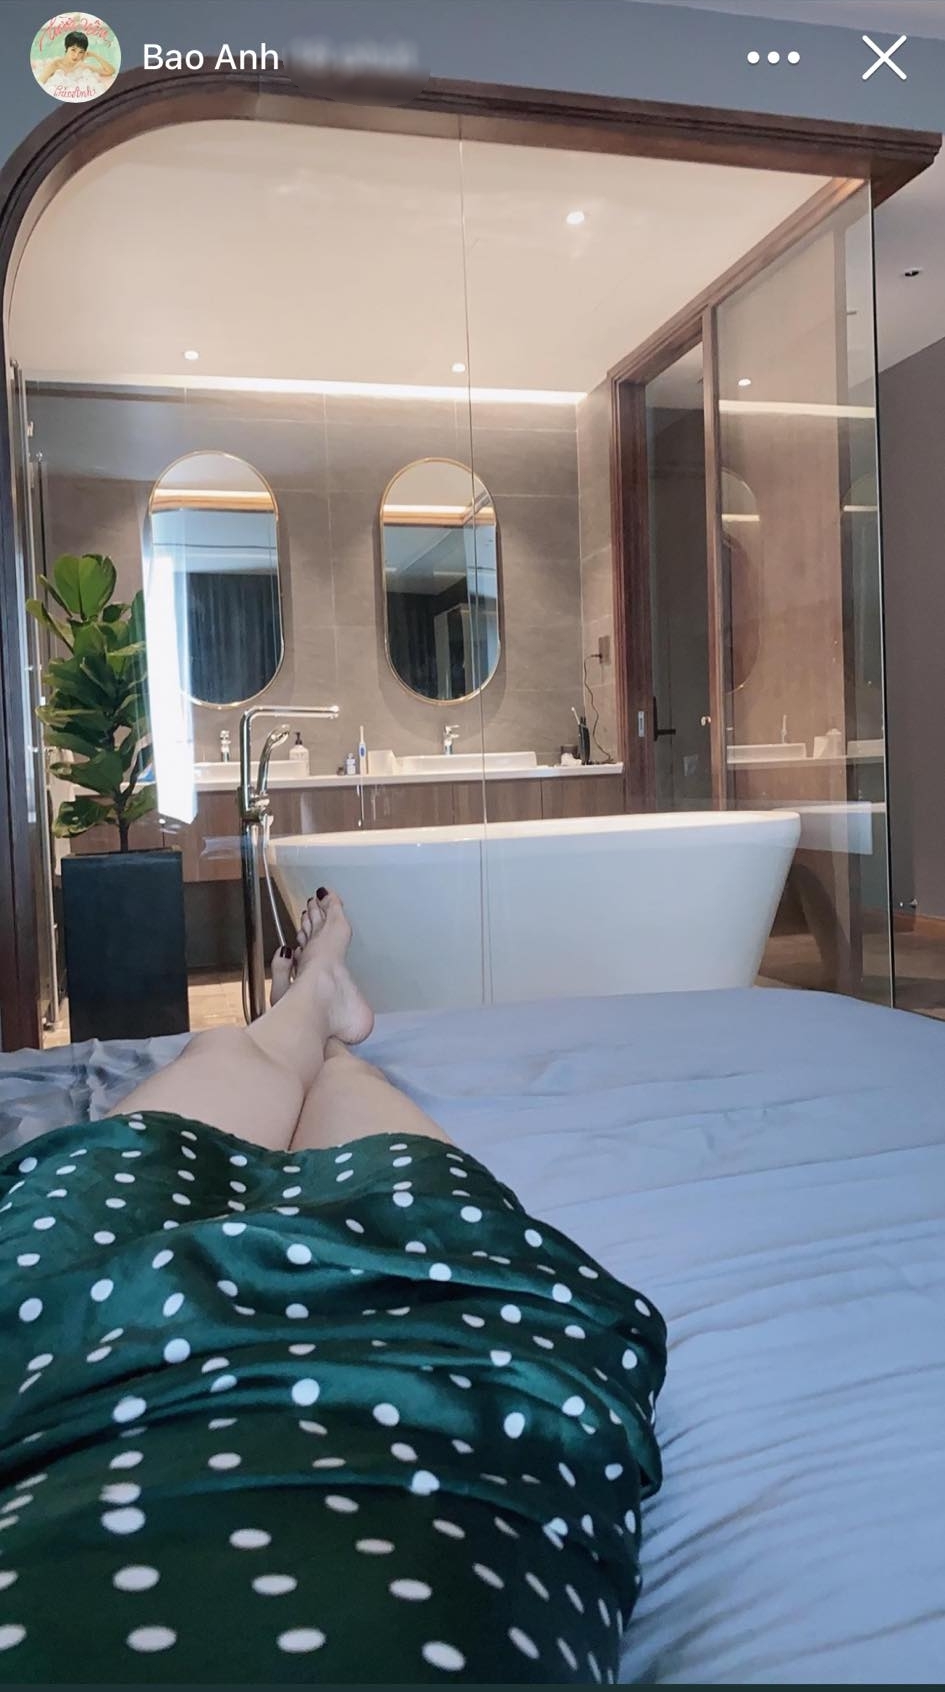  
Phòng ngủ được nối liền với phòng tắm bằng kính và có cả bồn tắm để cô có thể thư giãn. - Tin sao Viet - Tin tuc sao Viet - Scandal sao Viet - Tin tuc cua Sao - Tin cua Sao